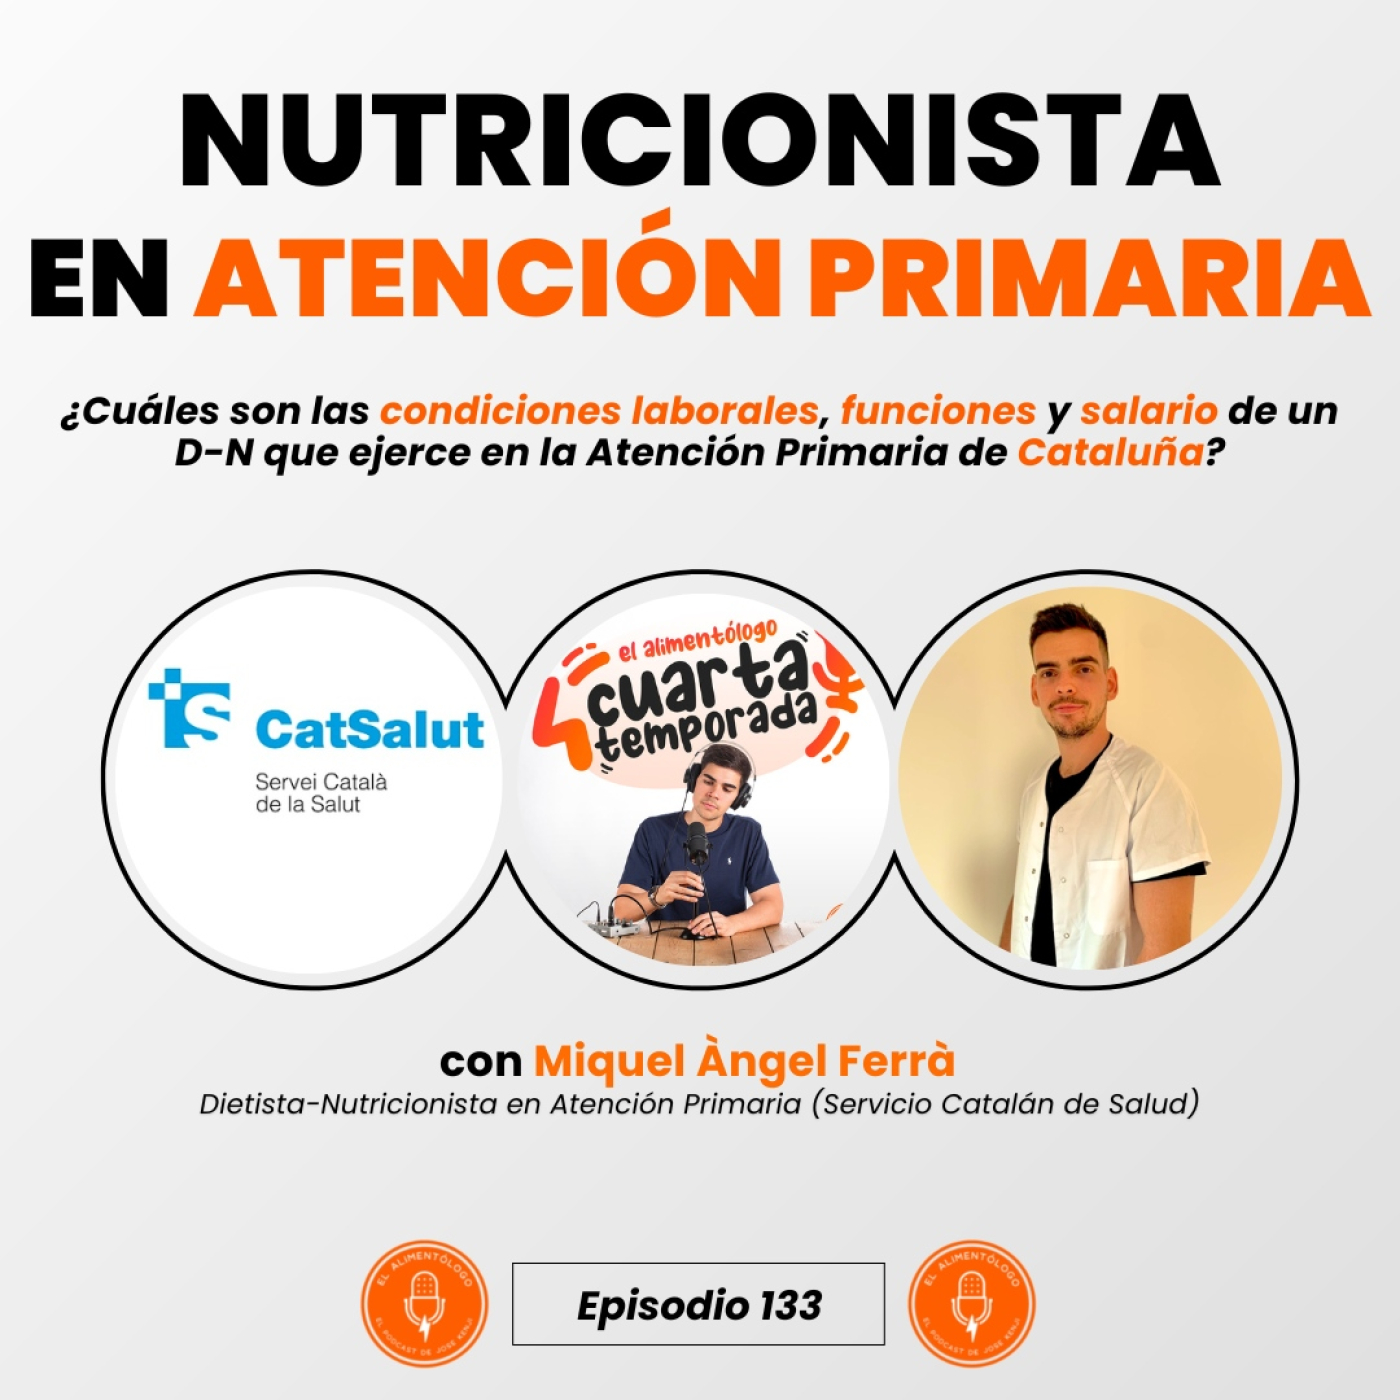 Nutricionista (D-N) en Atención Primaria de Cataluña | Acceso, Salario, Funciones (Ep. 133)